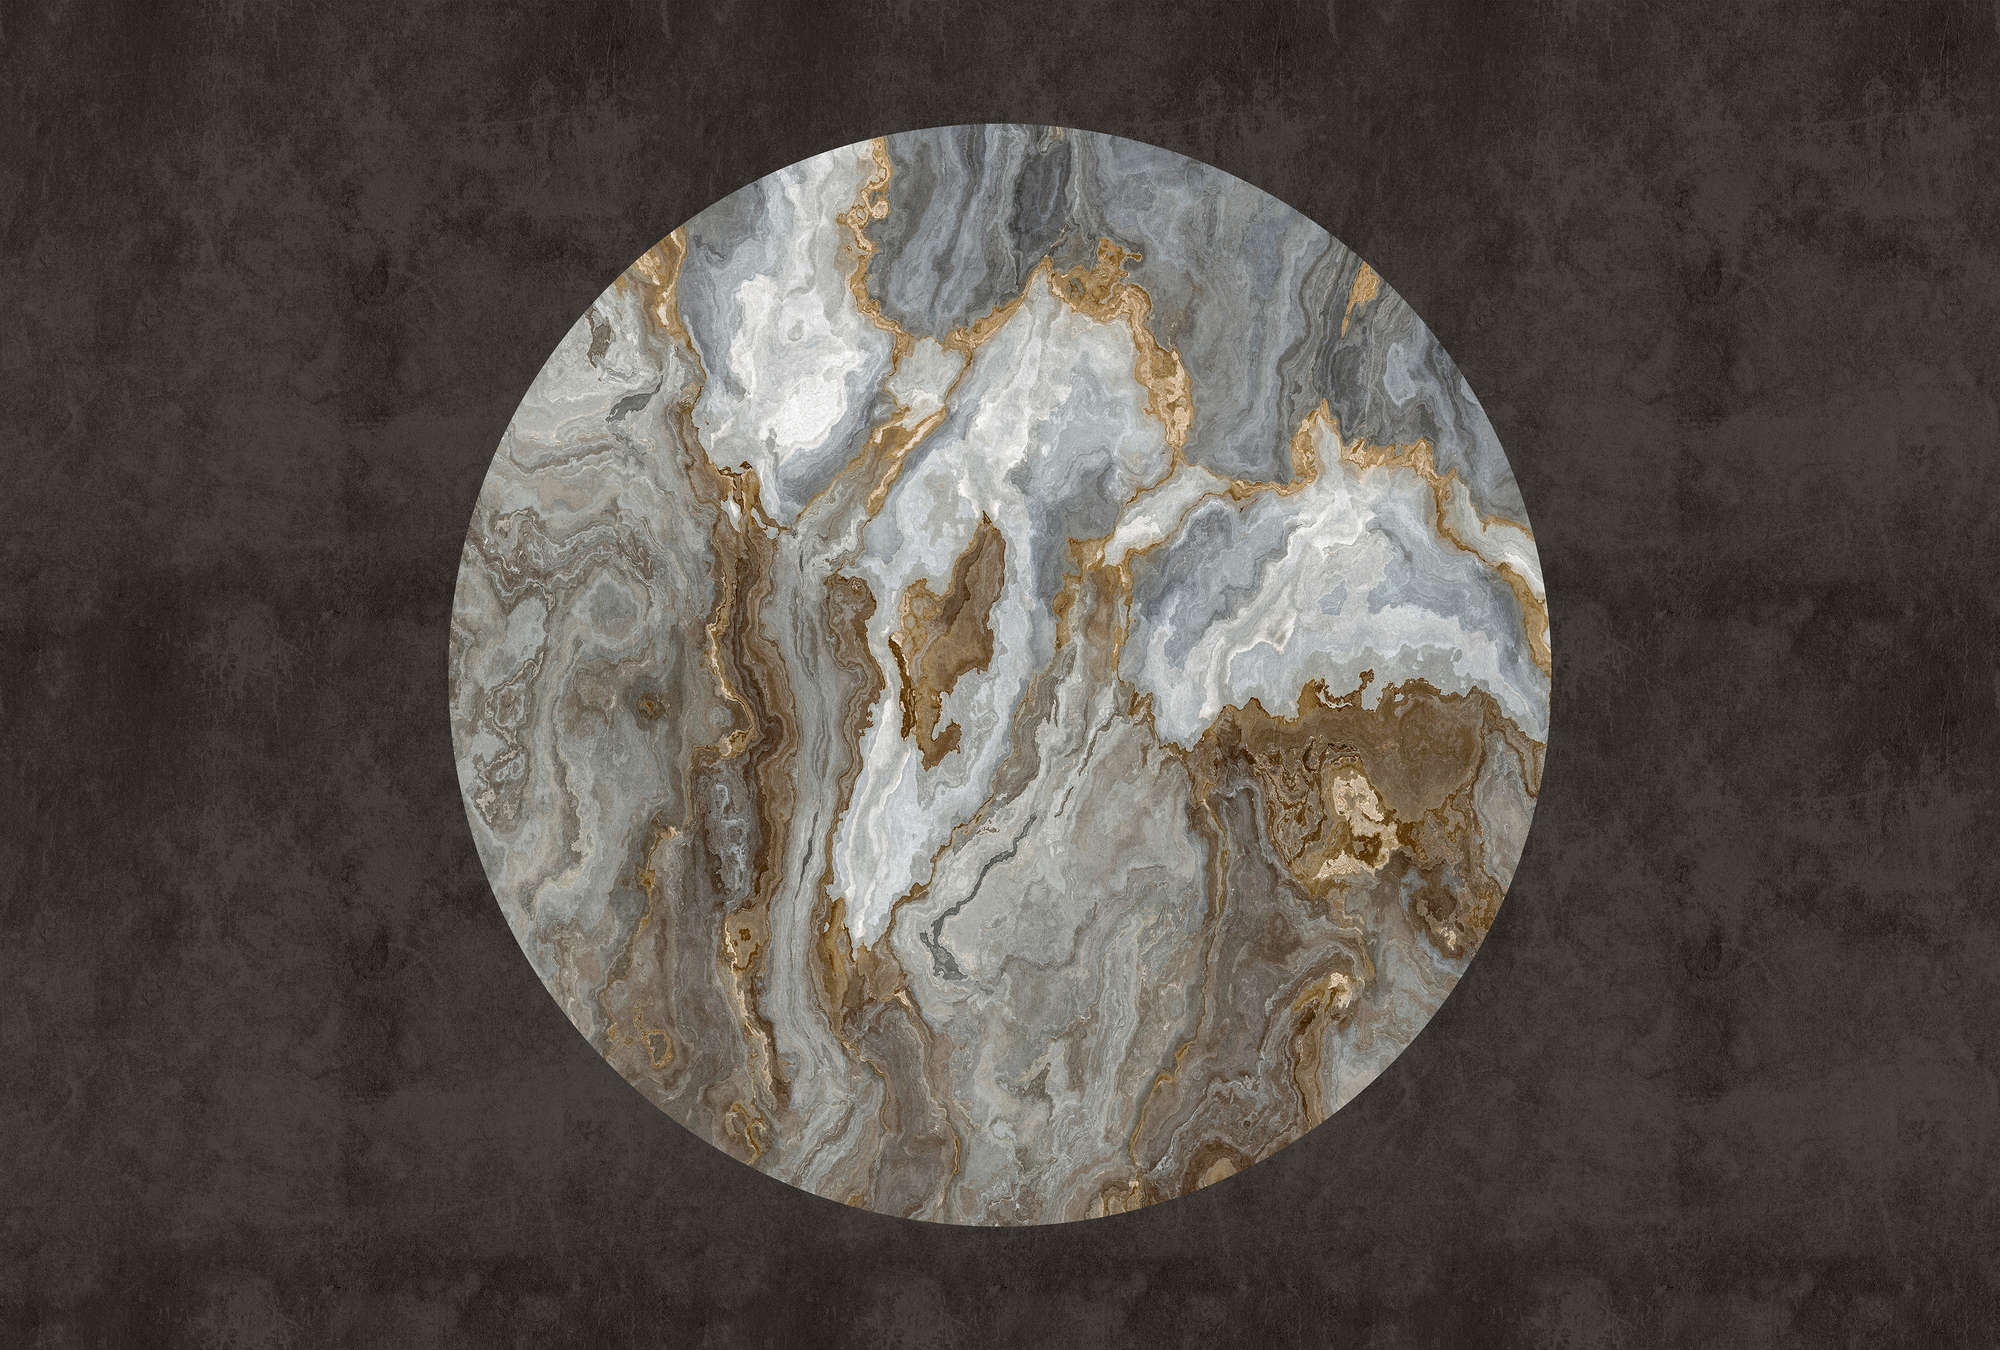             Luna 2 - Carta da parati in marmo cerchio di pietra davanti a un'ottica in gesso nero
        